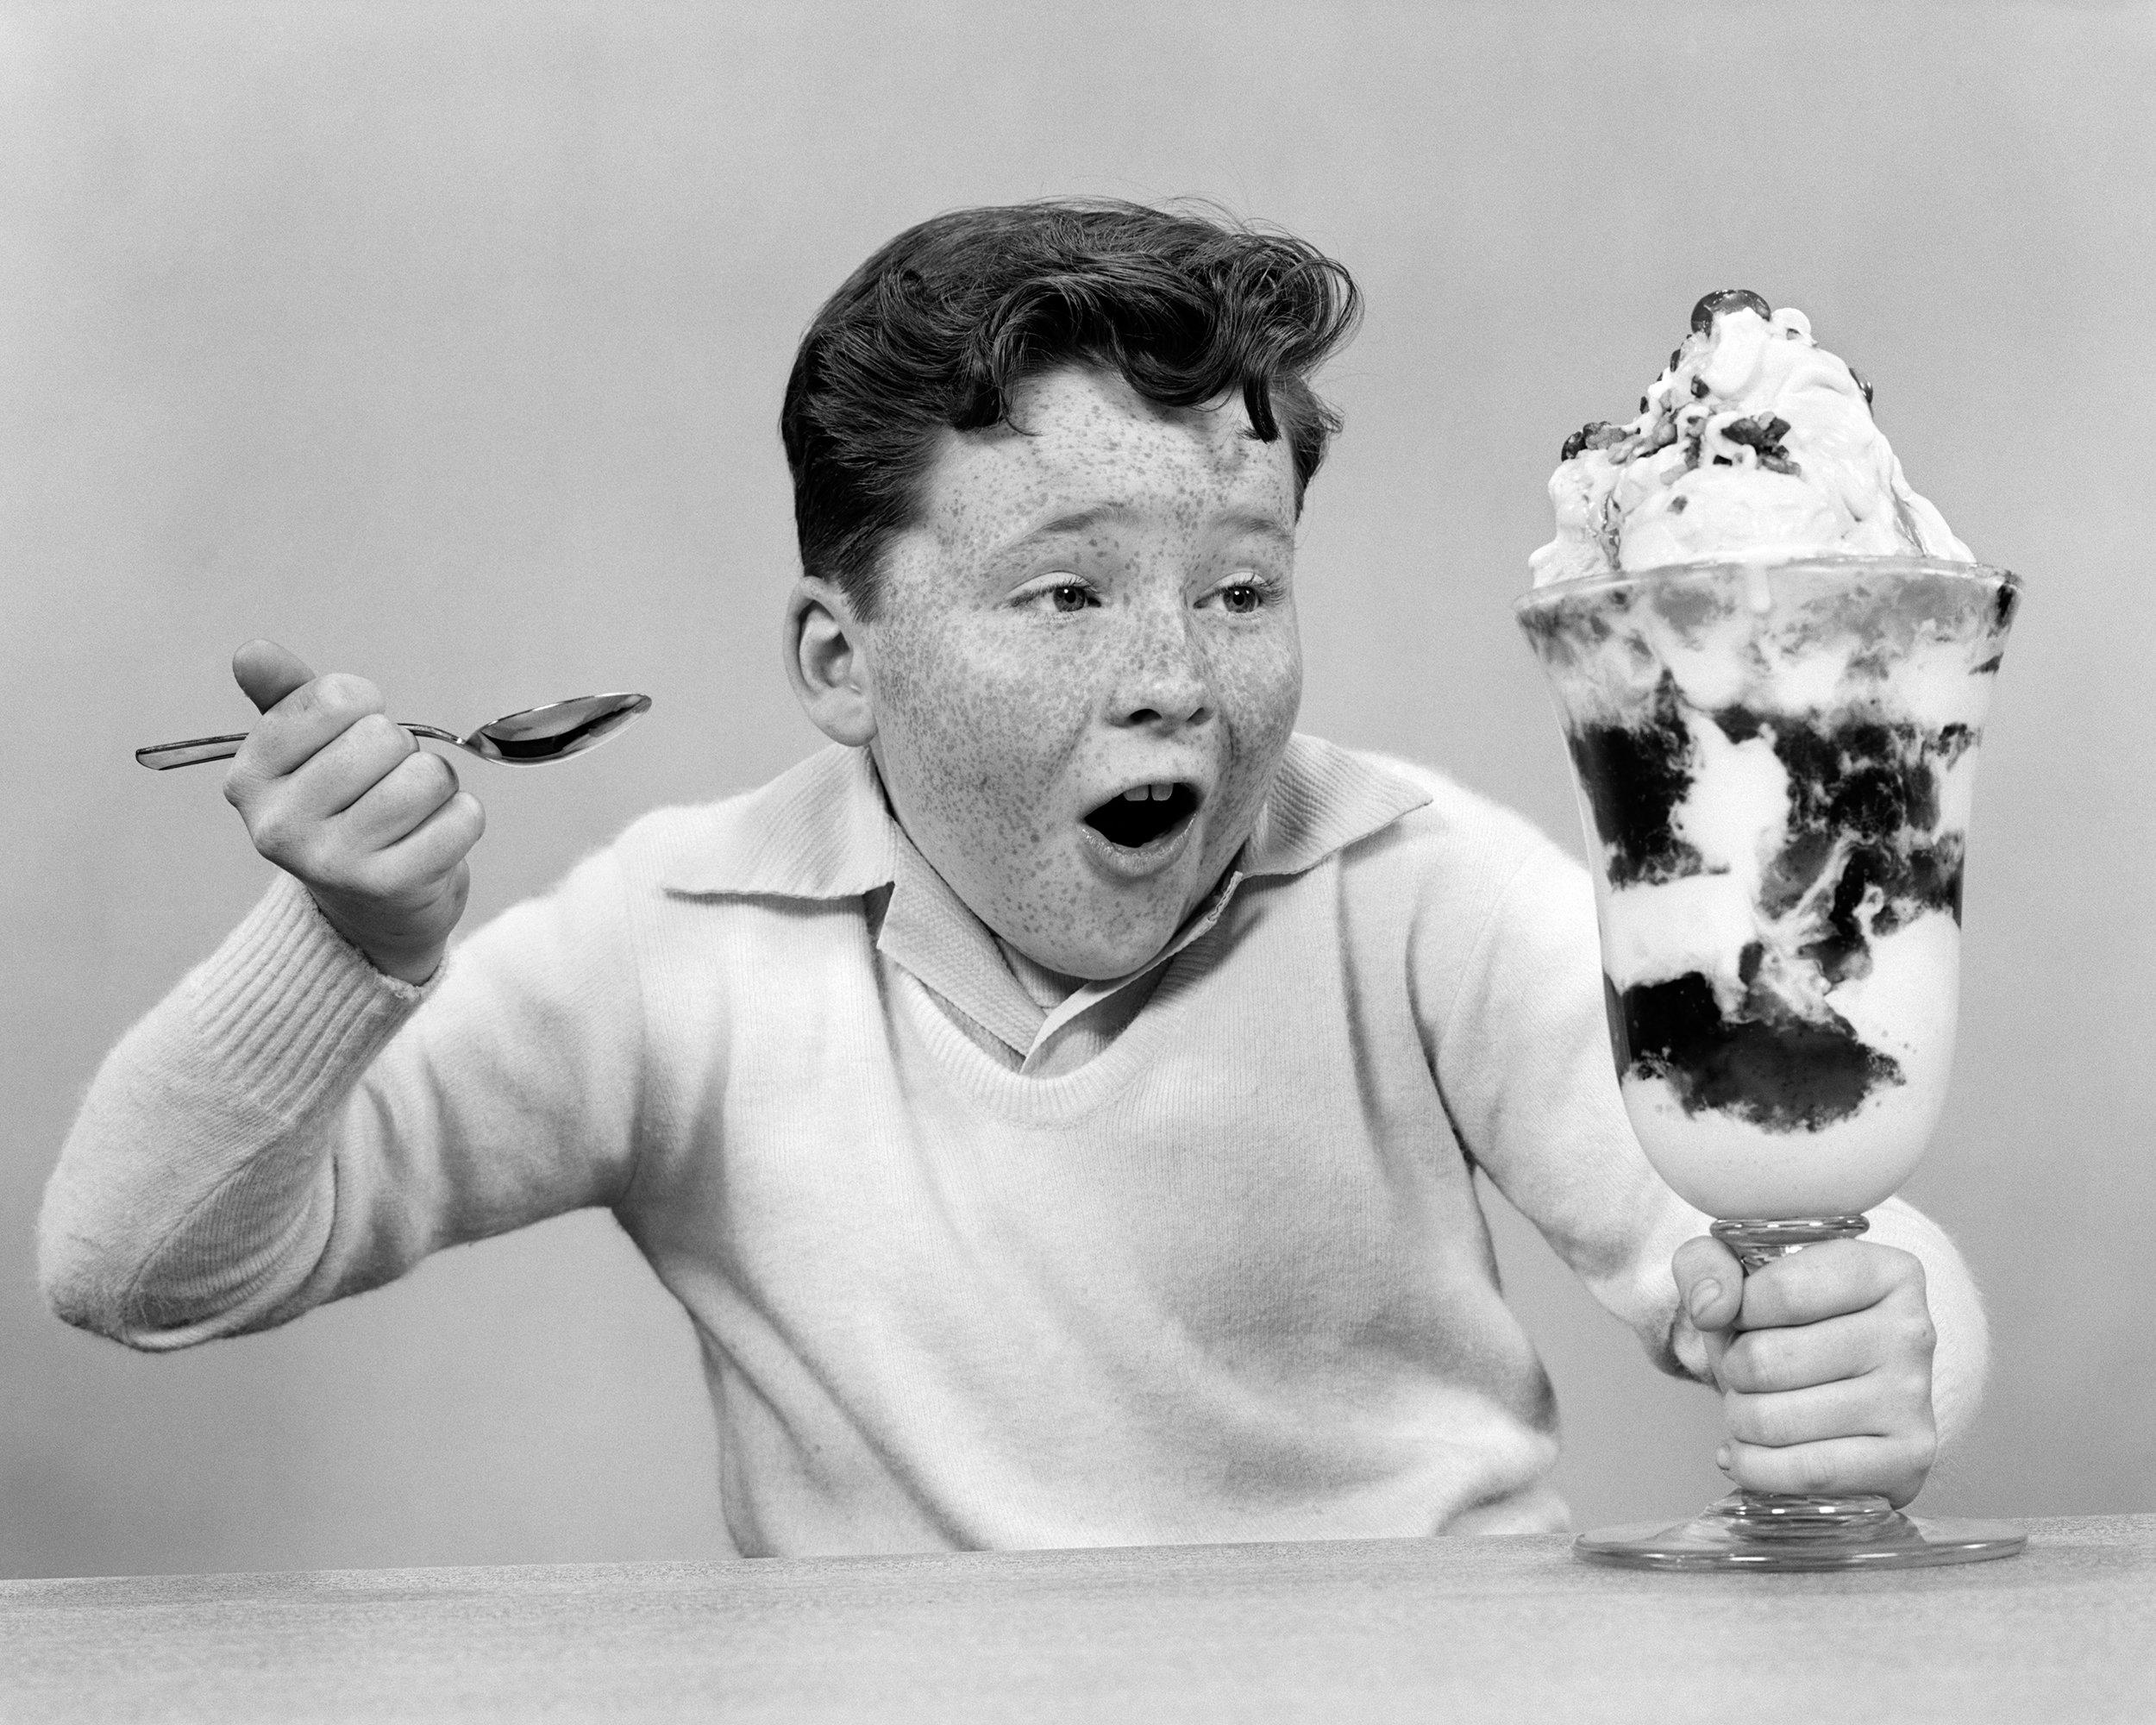 Вкусно ест мороженое. Ест мороженое. Человек ест мороженое. Ребенок с мороженым. Кушать мороженое.